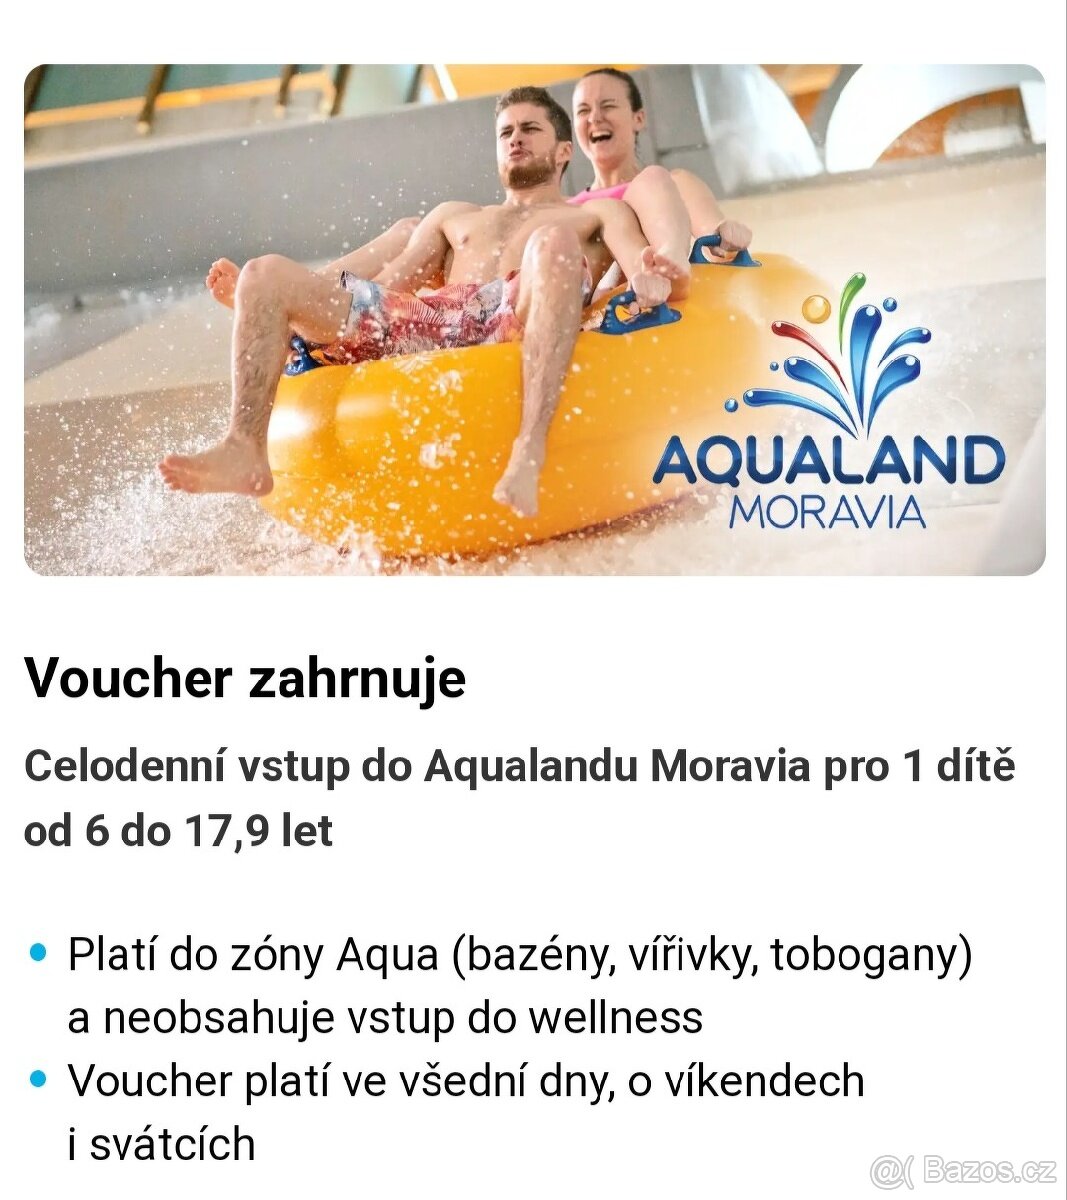 Aqualand Moravia celodenní vstupné pro dítě do konce dubna